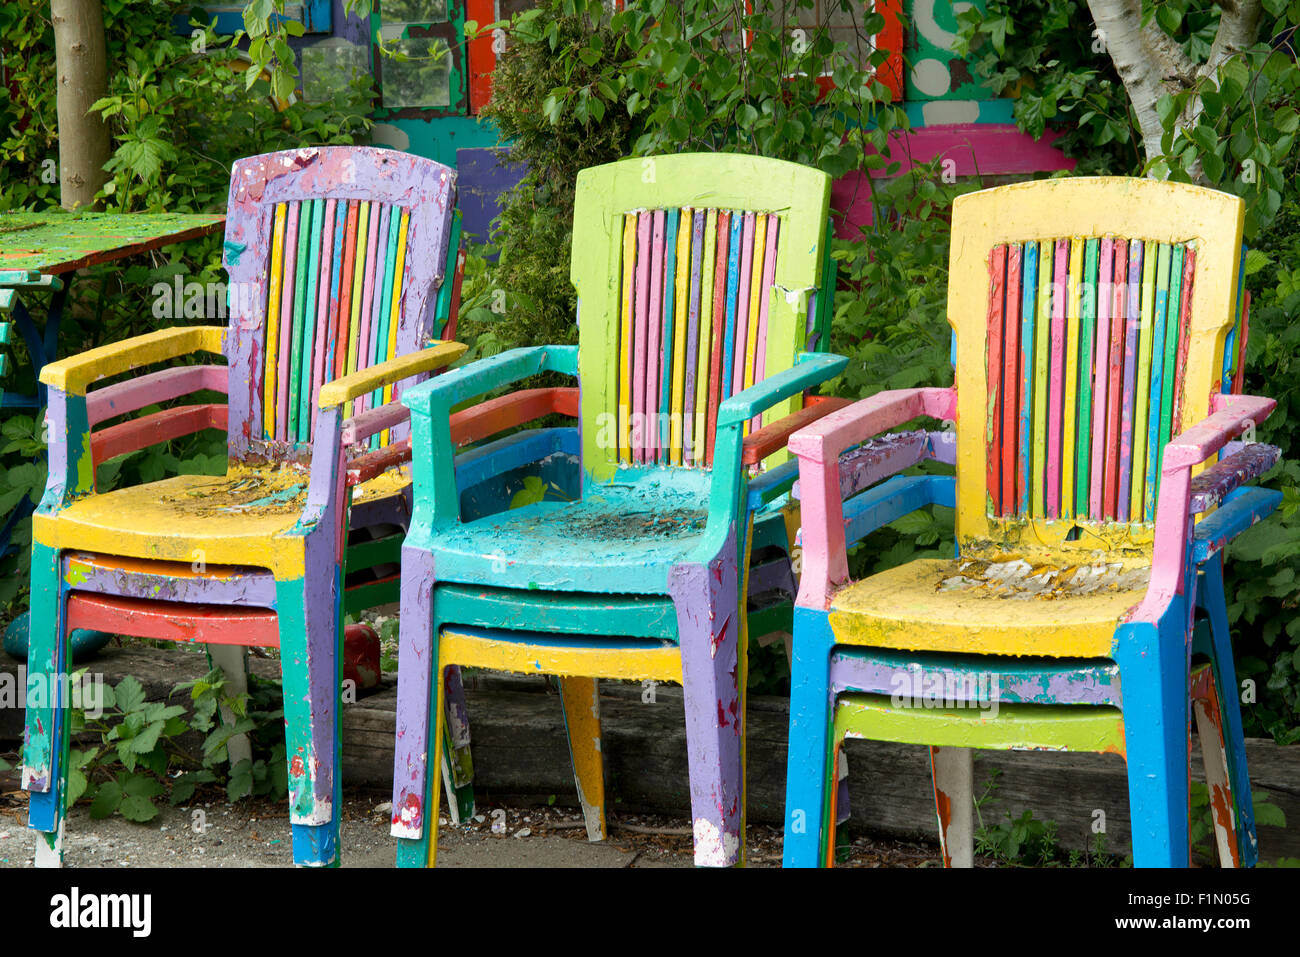 Bunt bemalte Stühle im Garten Stockfotografie - Alamy